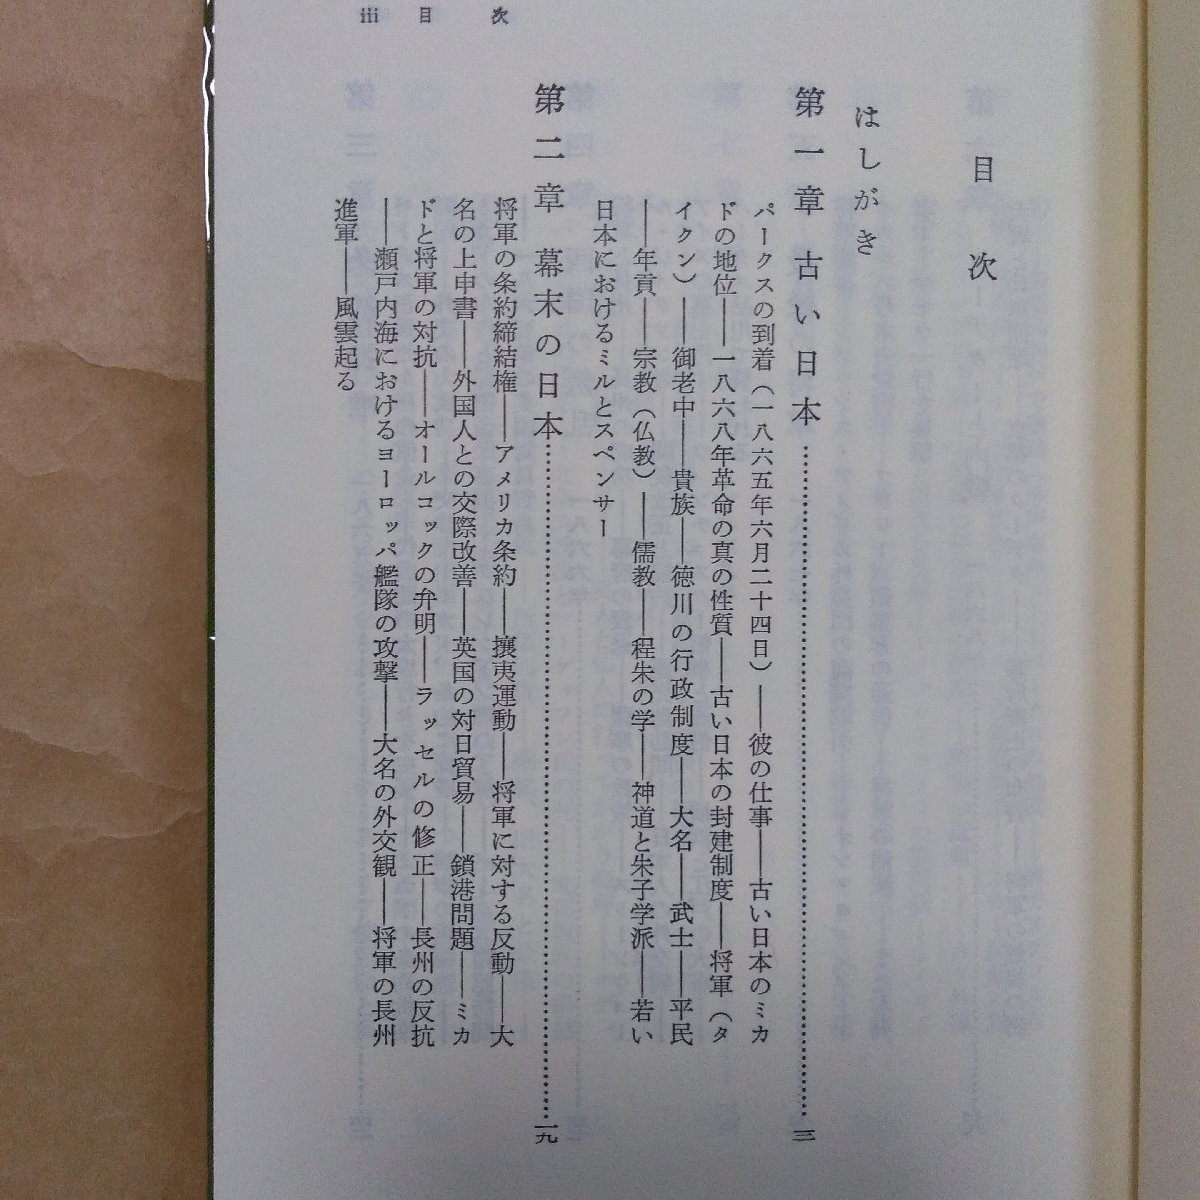 * park s. Япония ... ежедневно F.V.ti gold z высота груша .. перевод Восток библиотека 429 Heibonsha 1984 год первая версия 